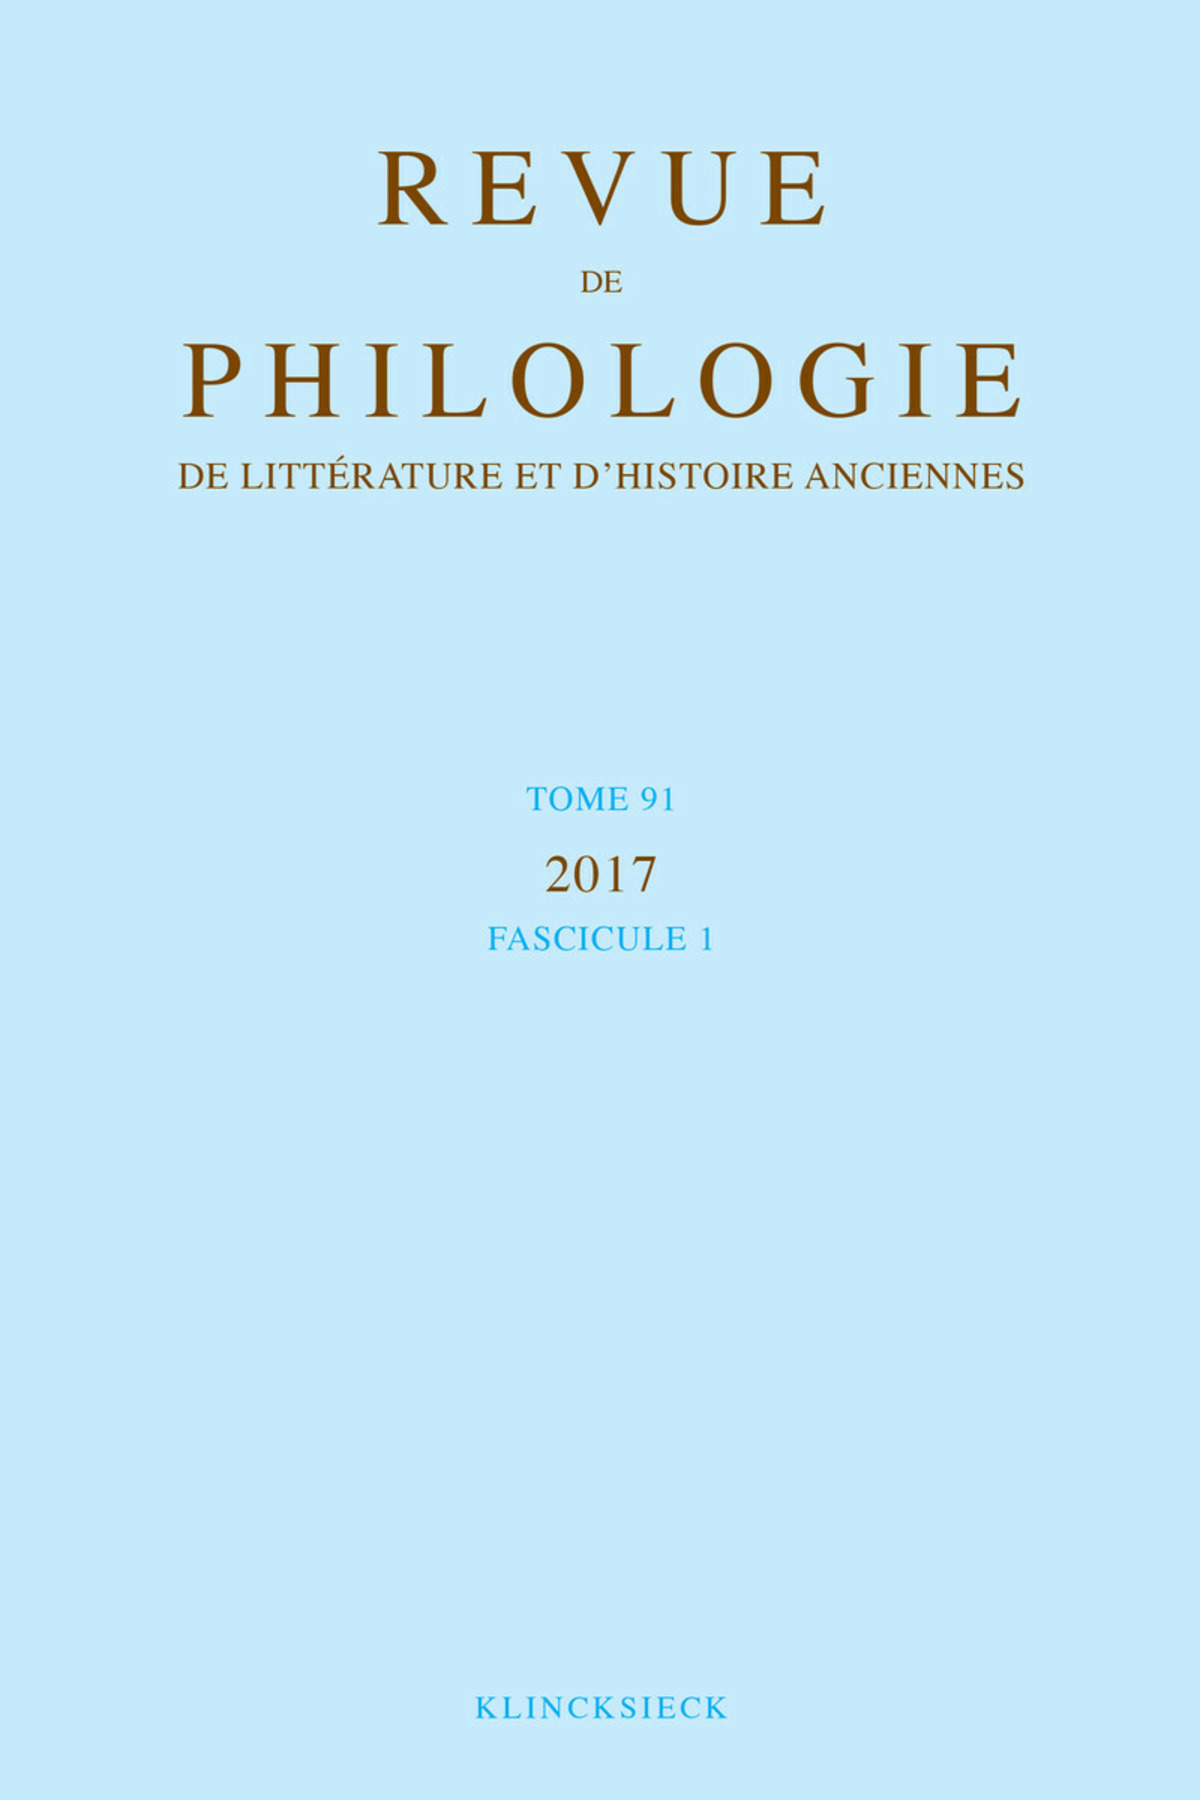 Revue de philologie, de littérature et d'histoire anciennes volume 91-1